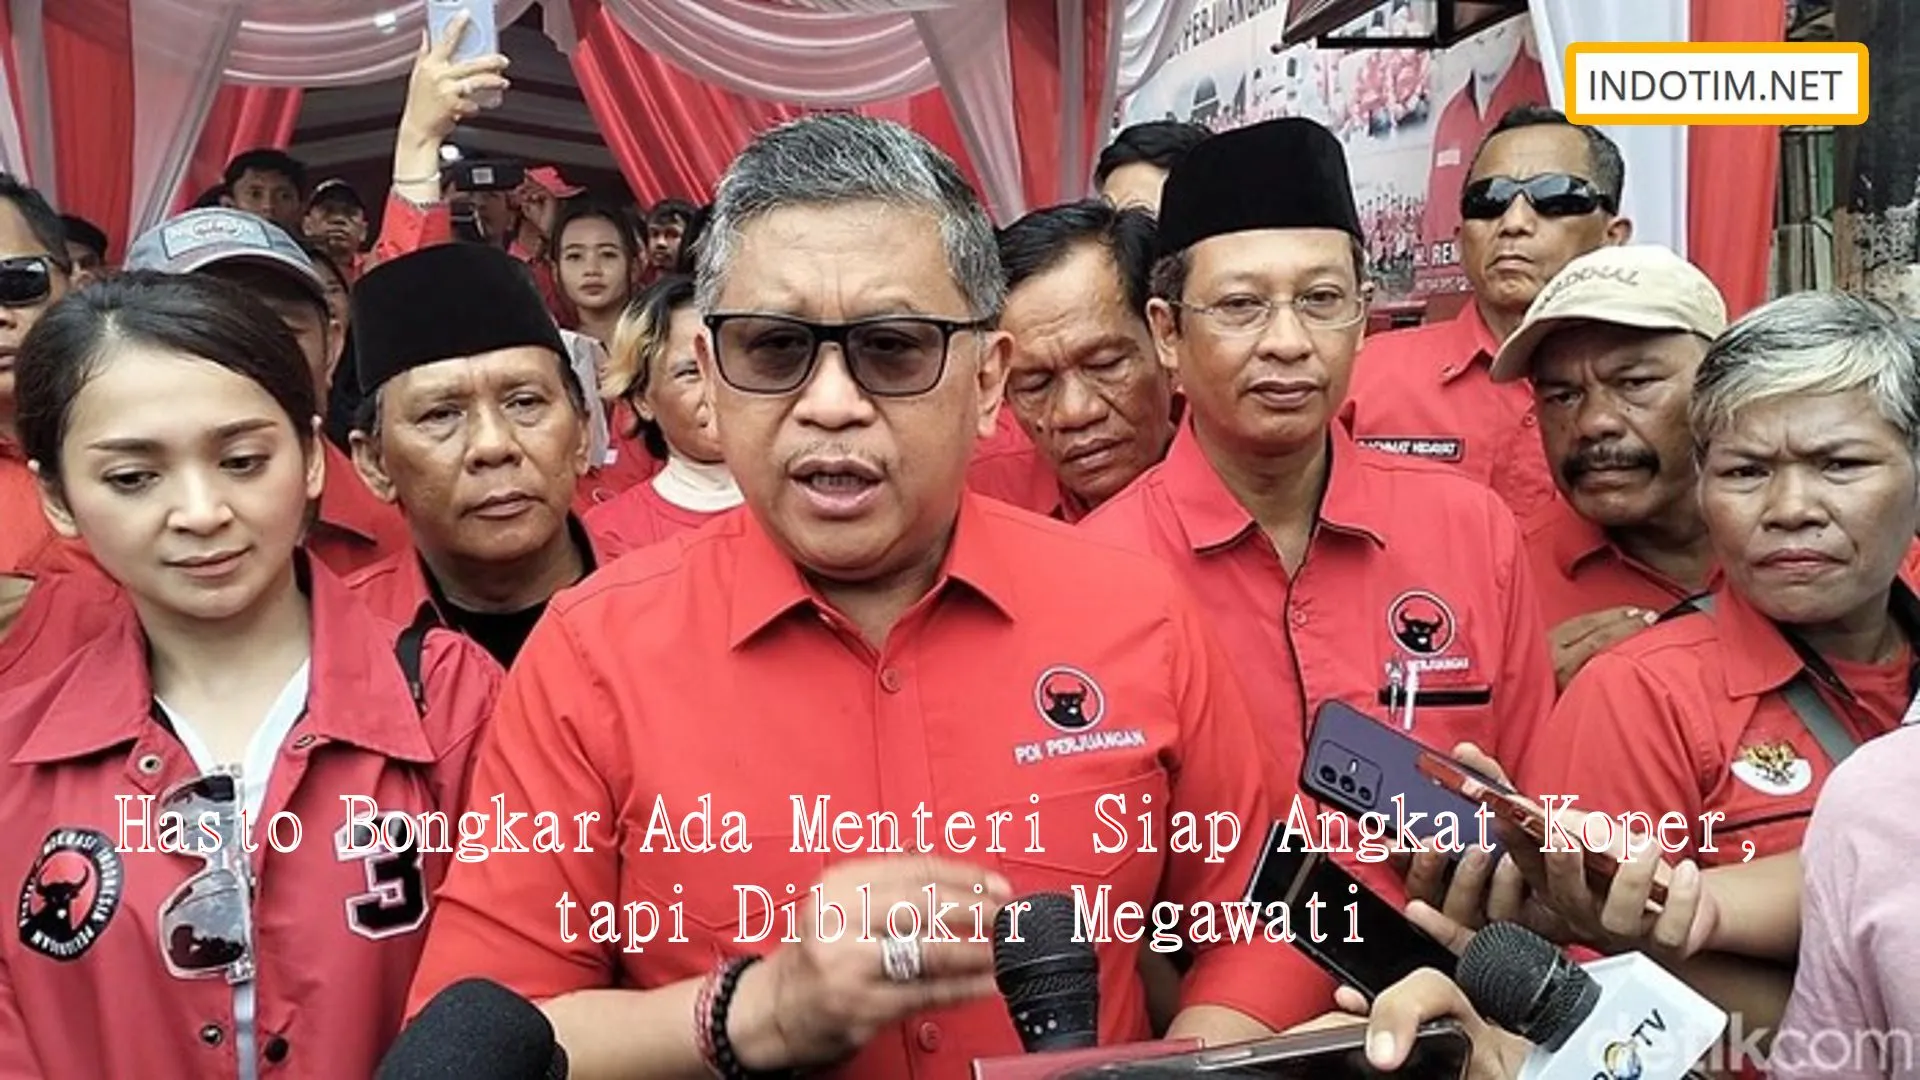 Hasto Bongkar Ada Menteri Siap Angkat Koper, tapi Diblokir Megawati